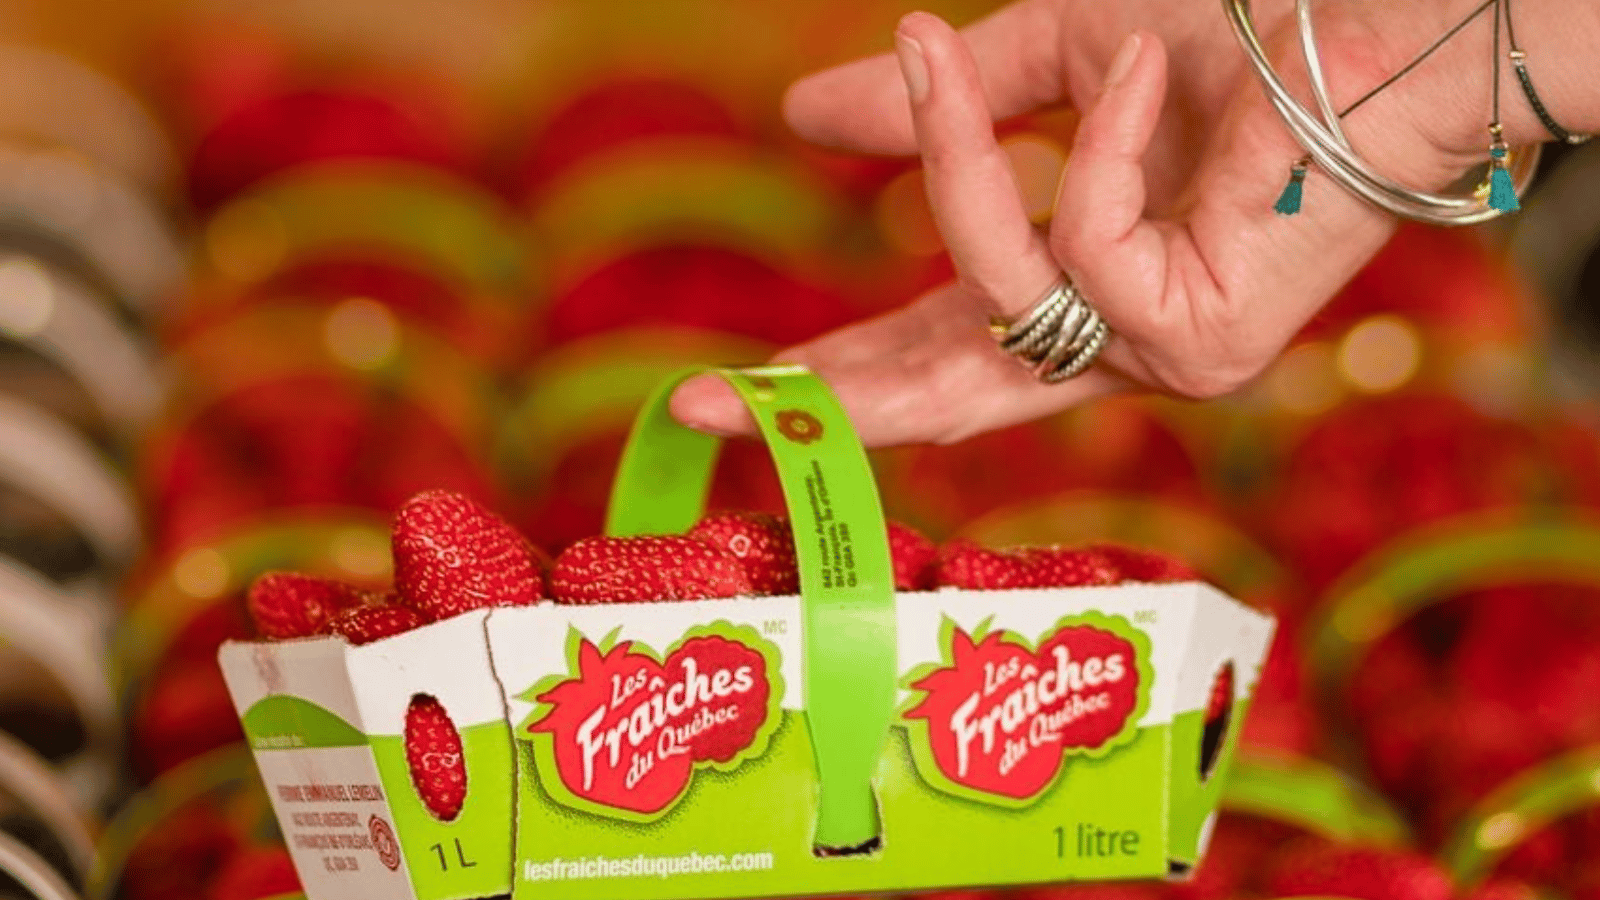 Voici dans quelle épicerie trouver les fraises du Québec les moins chères cette semaine